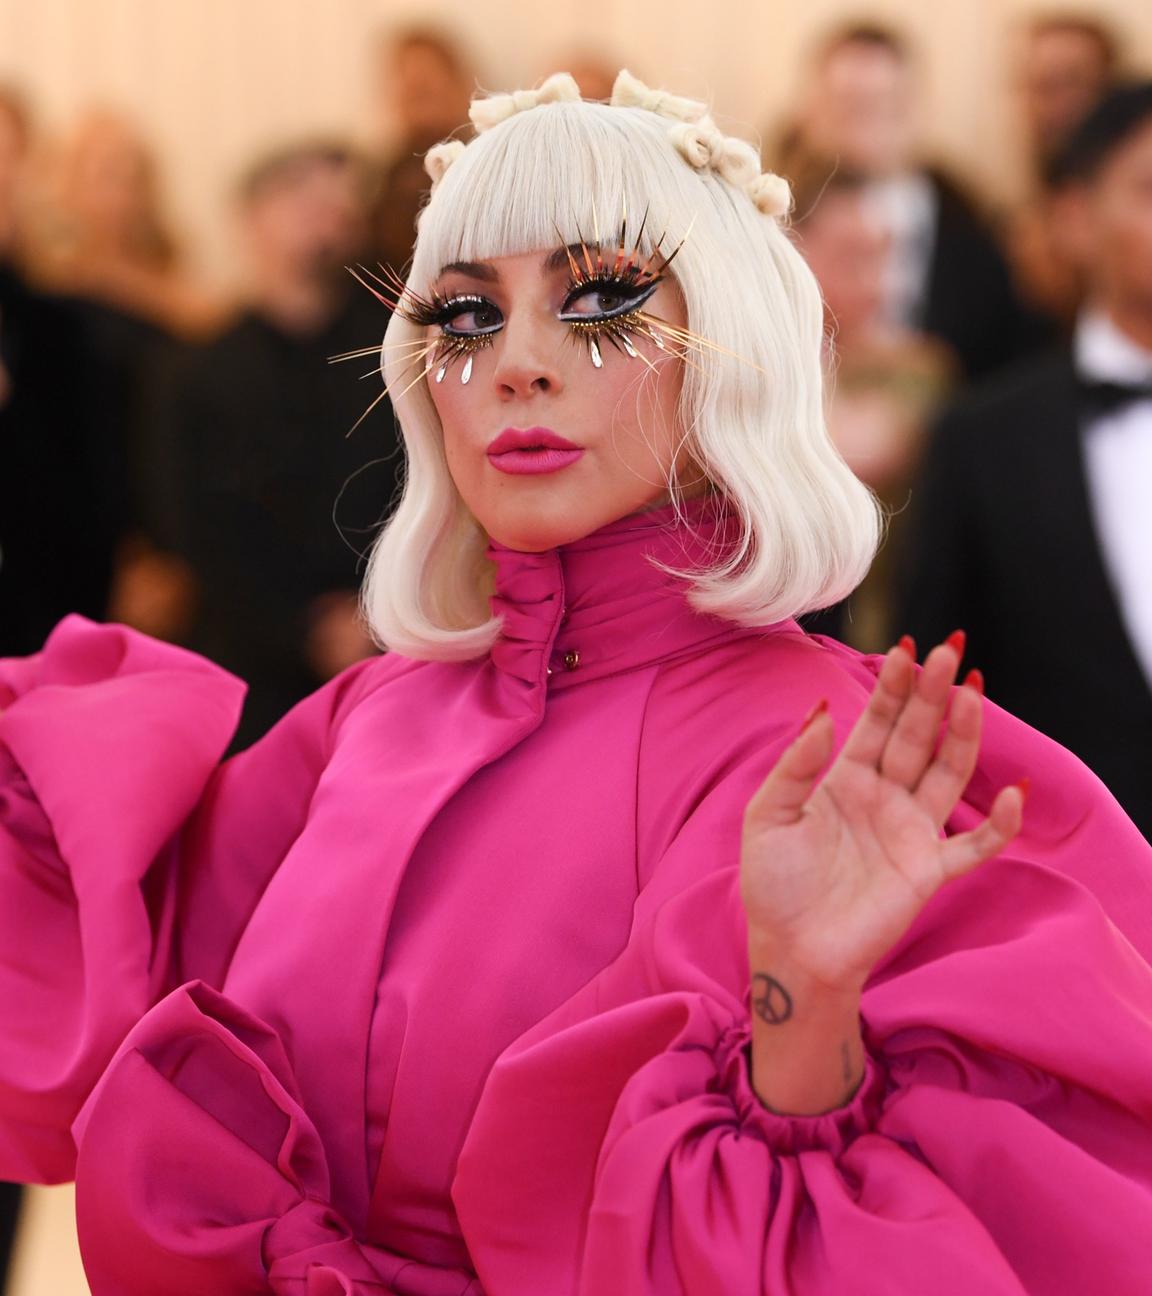  Lady Gaga trägt ein rosafarbenes Kleid mit Puffärmeln. Hellblonde Haare reichen ihr bis zur Schulter und sie trägt lange künstliche Wimpern. Im Hintergrund sind Fotografen und ein Mann im Smoking zu sehen.